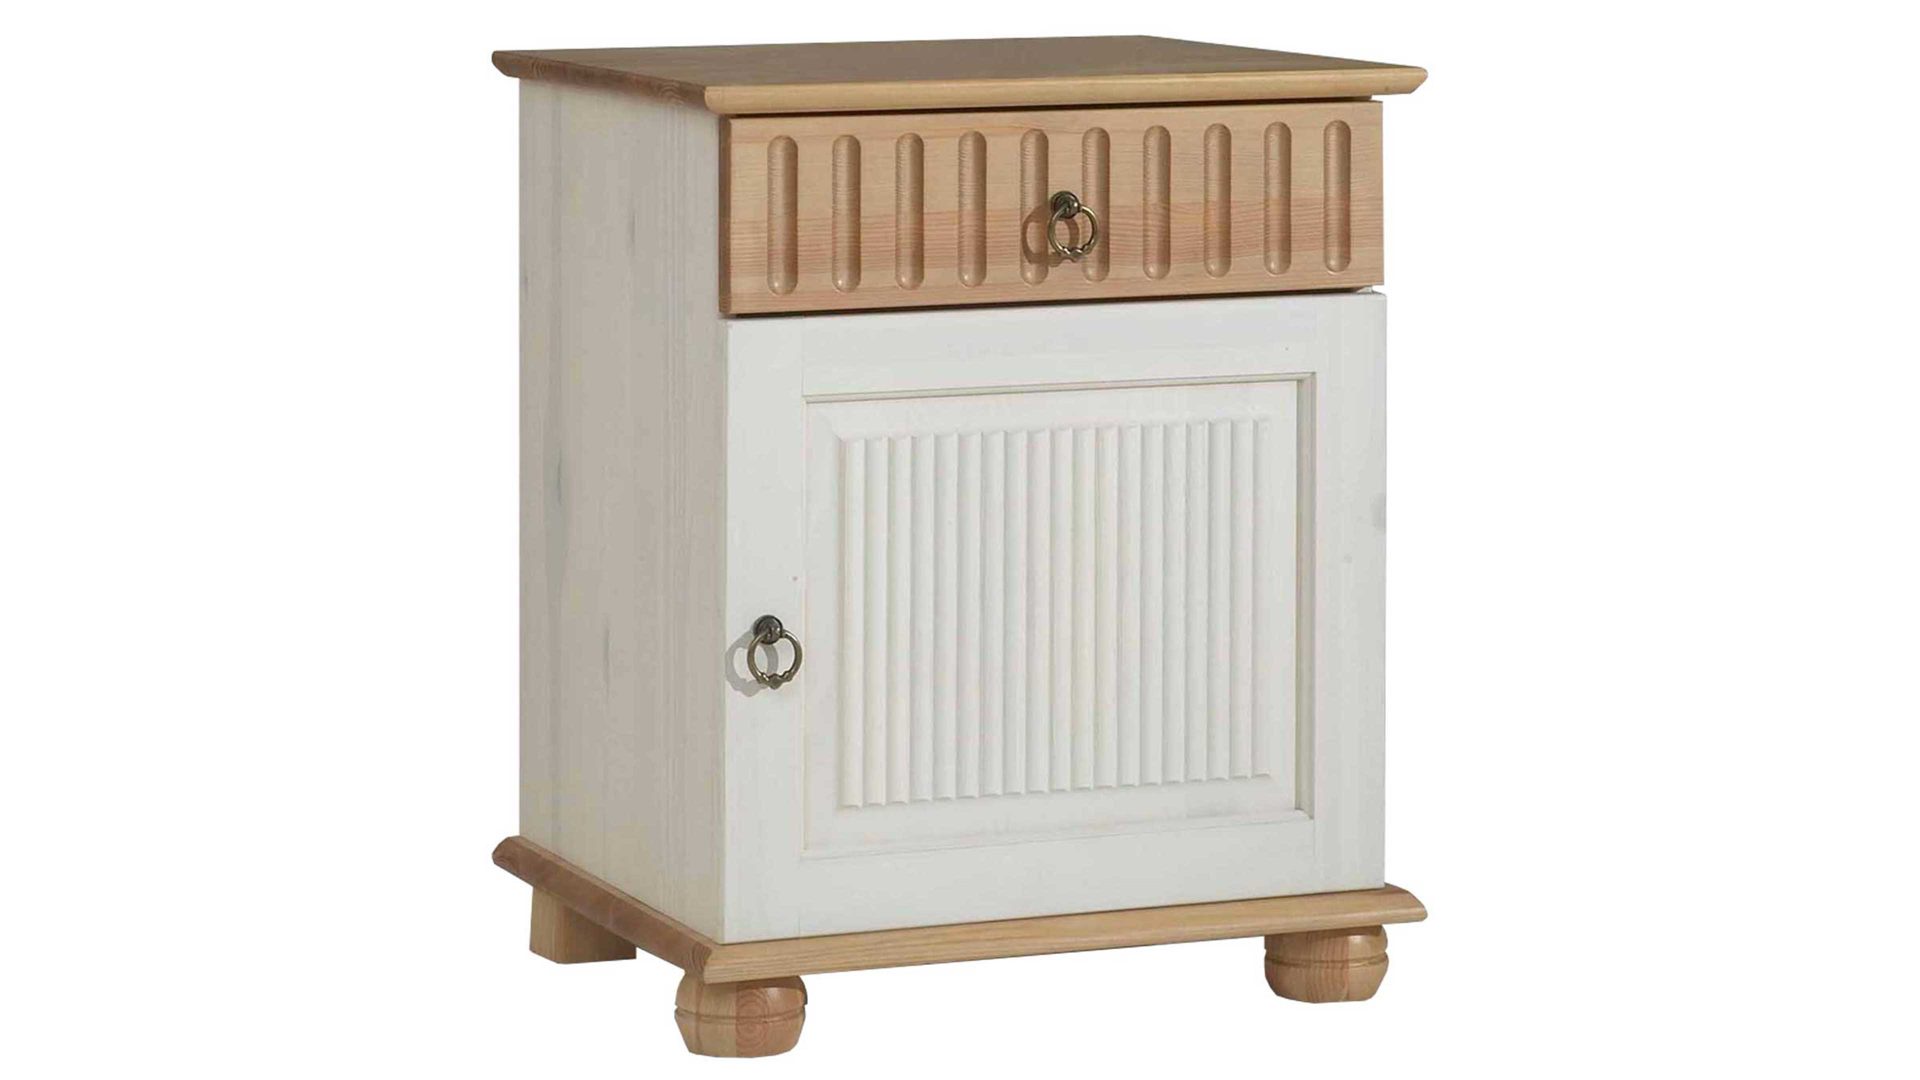 Nachtkommode Euro diffusion aus Holz in Holzfarben Nachtkommode bzw. Nachttisch mit geschmackvoller Optik  Honig & Weiß - eine Tür, eine Schublade